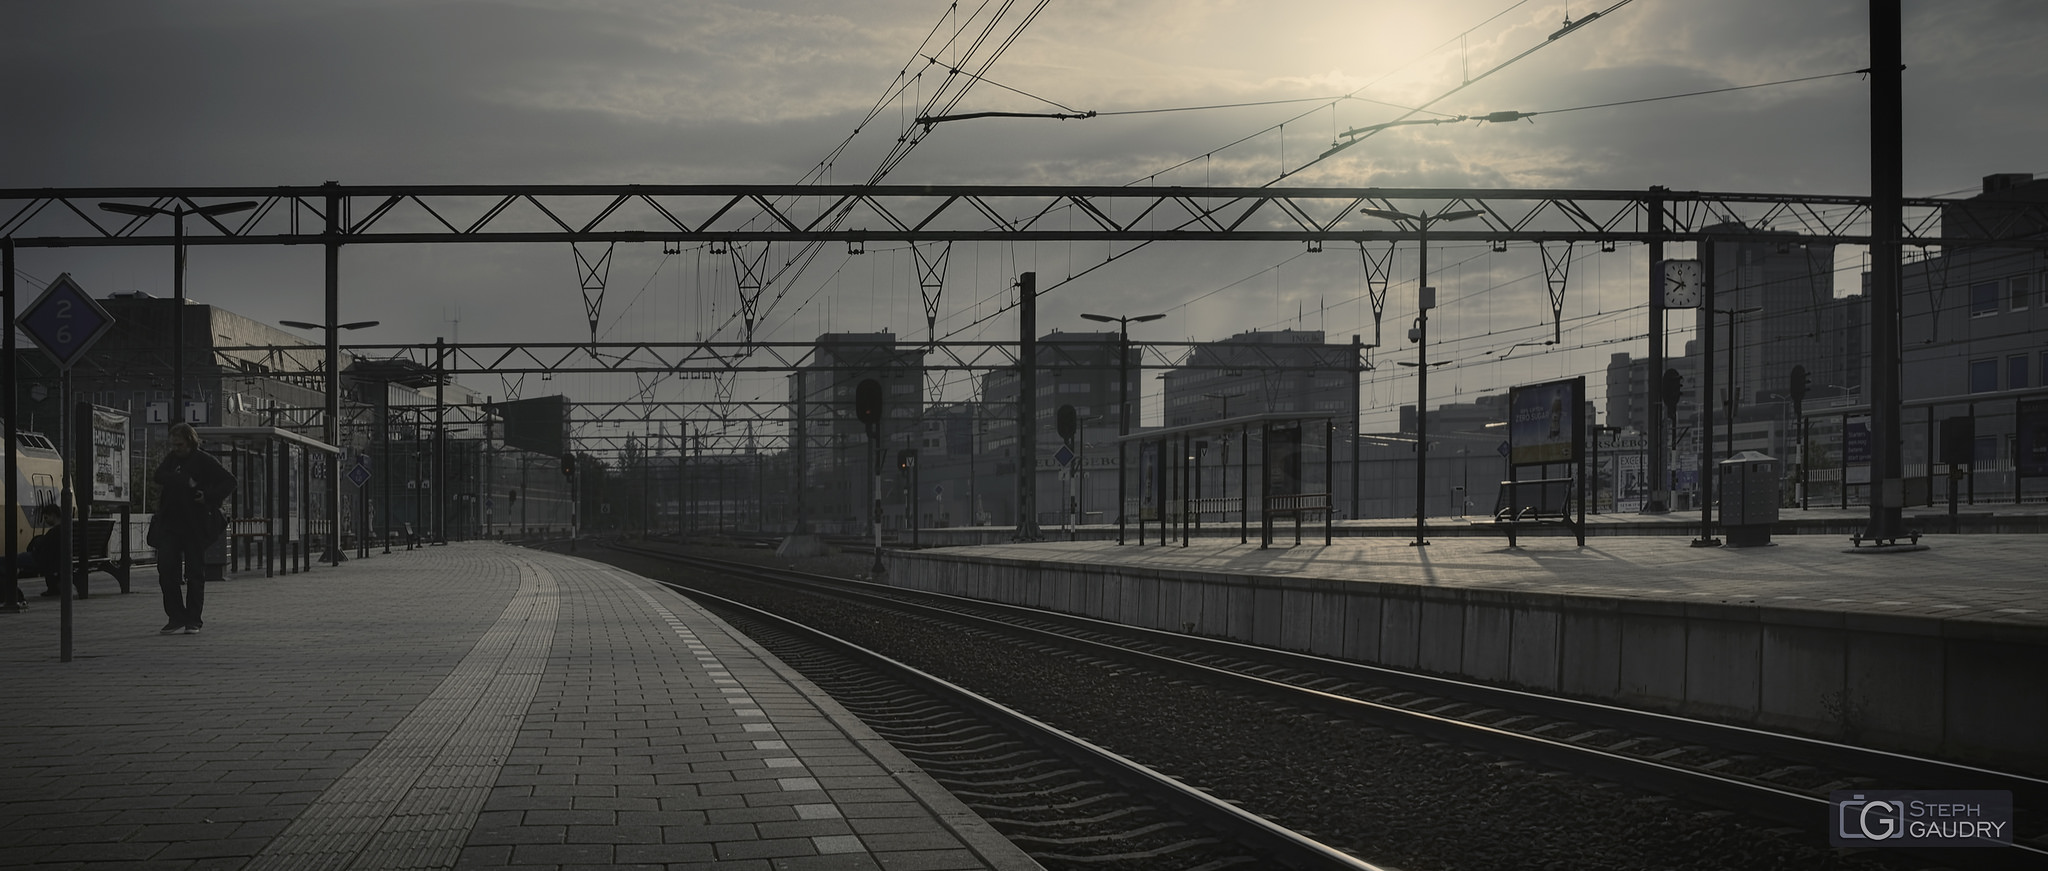 Eindhoven, les quais de la gare [Click to start slideshow]